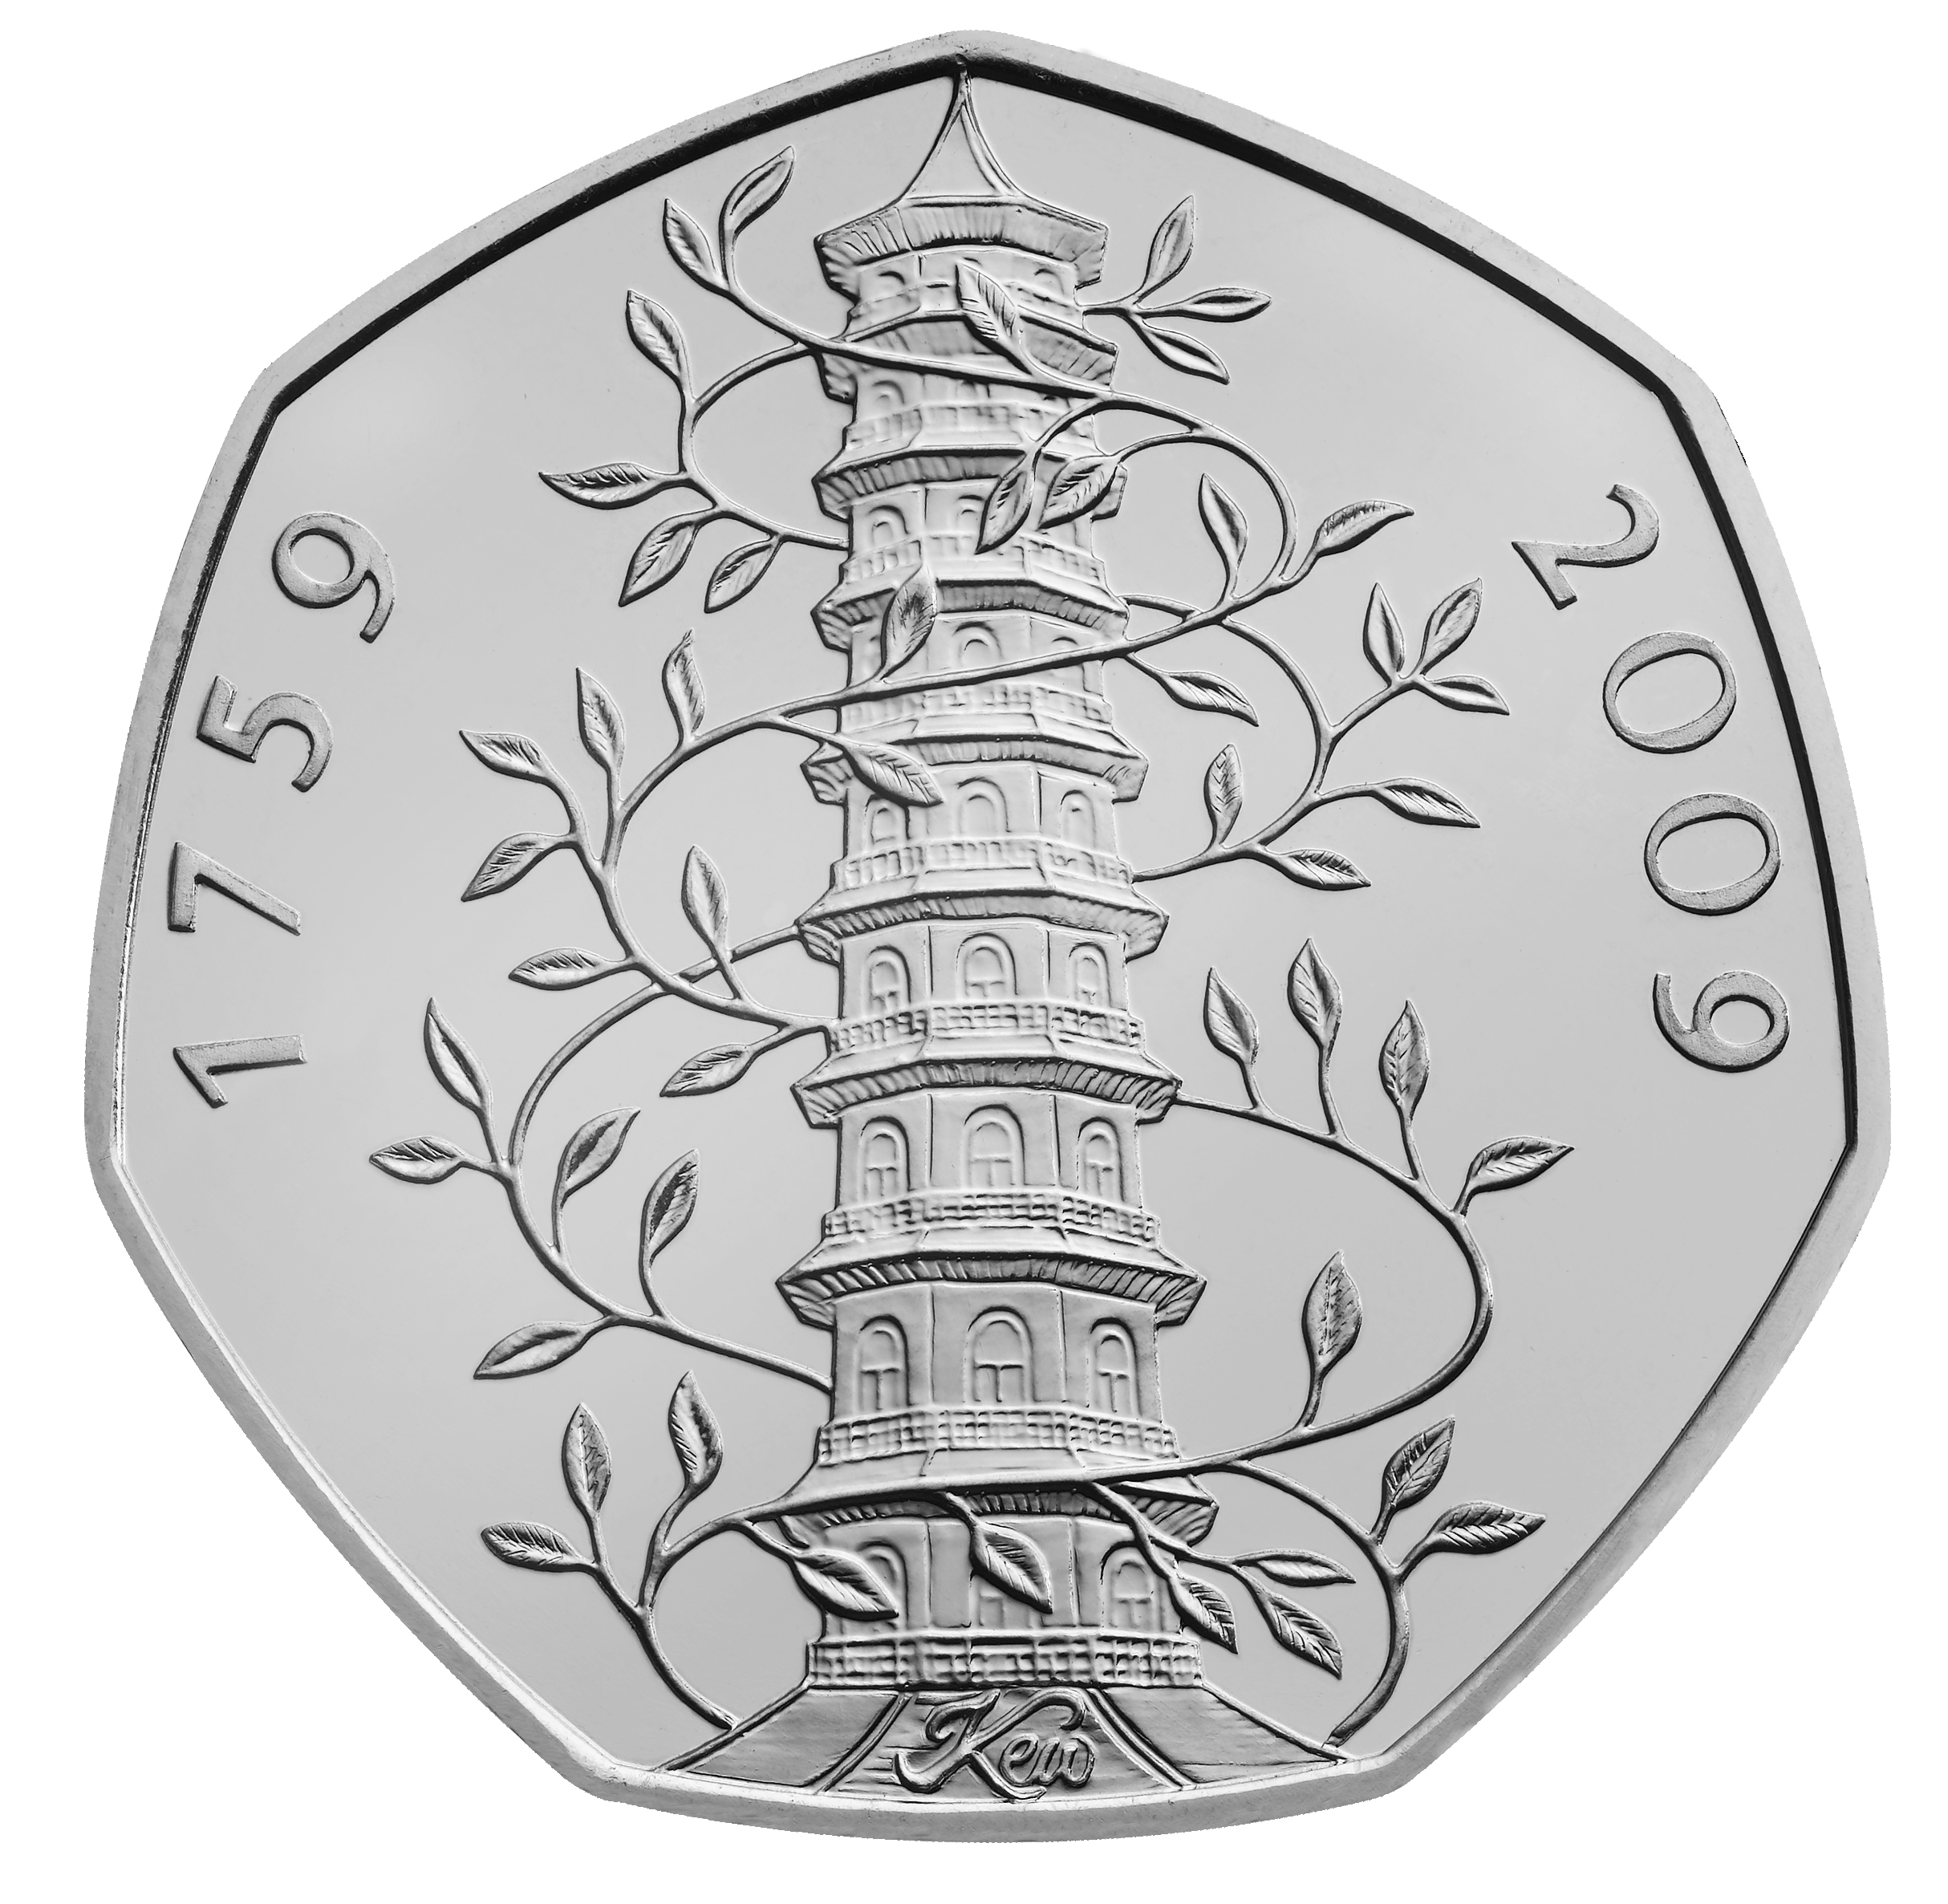 Eine davon, die sogenannte Kew-Gardens-Münze, ist einen hübschen Cent wert